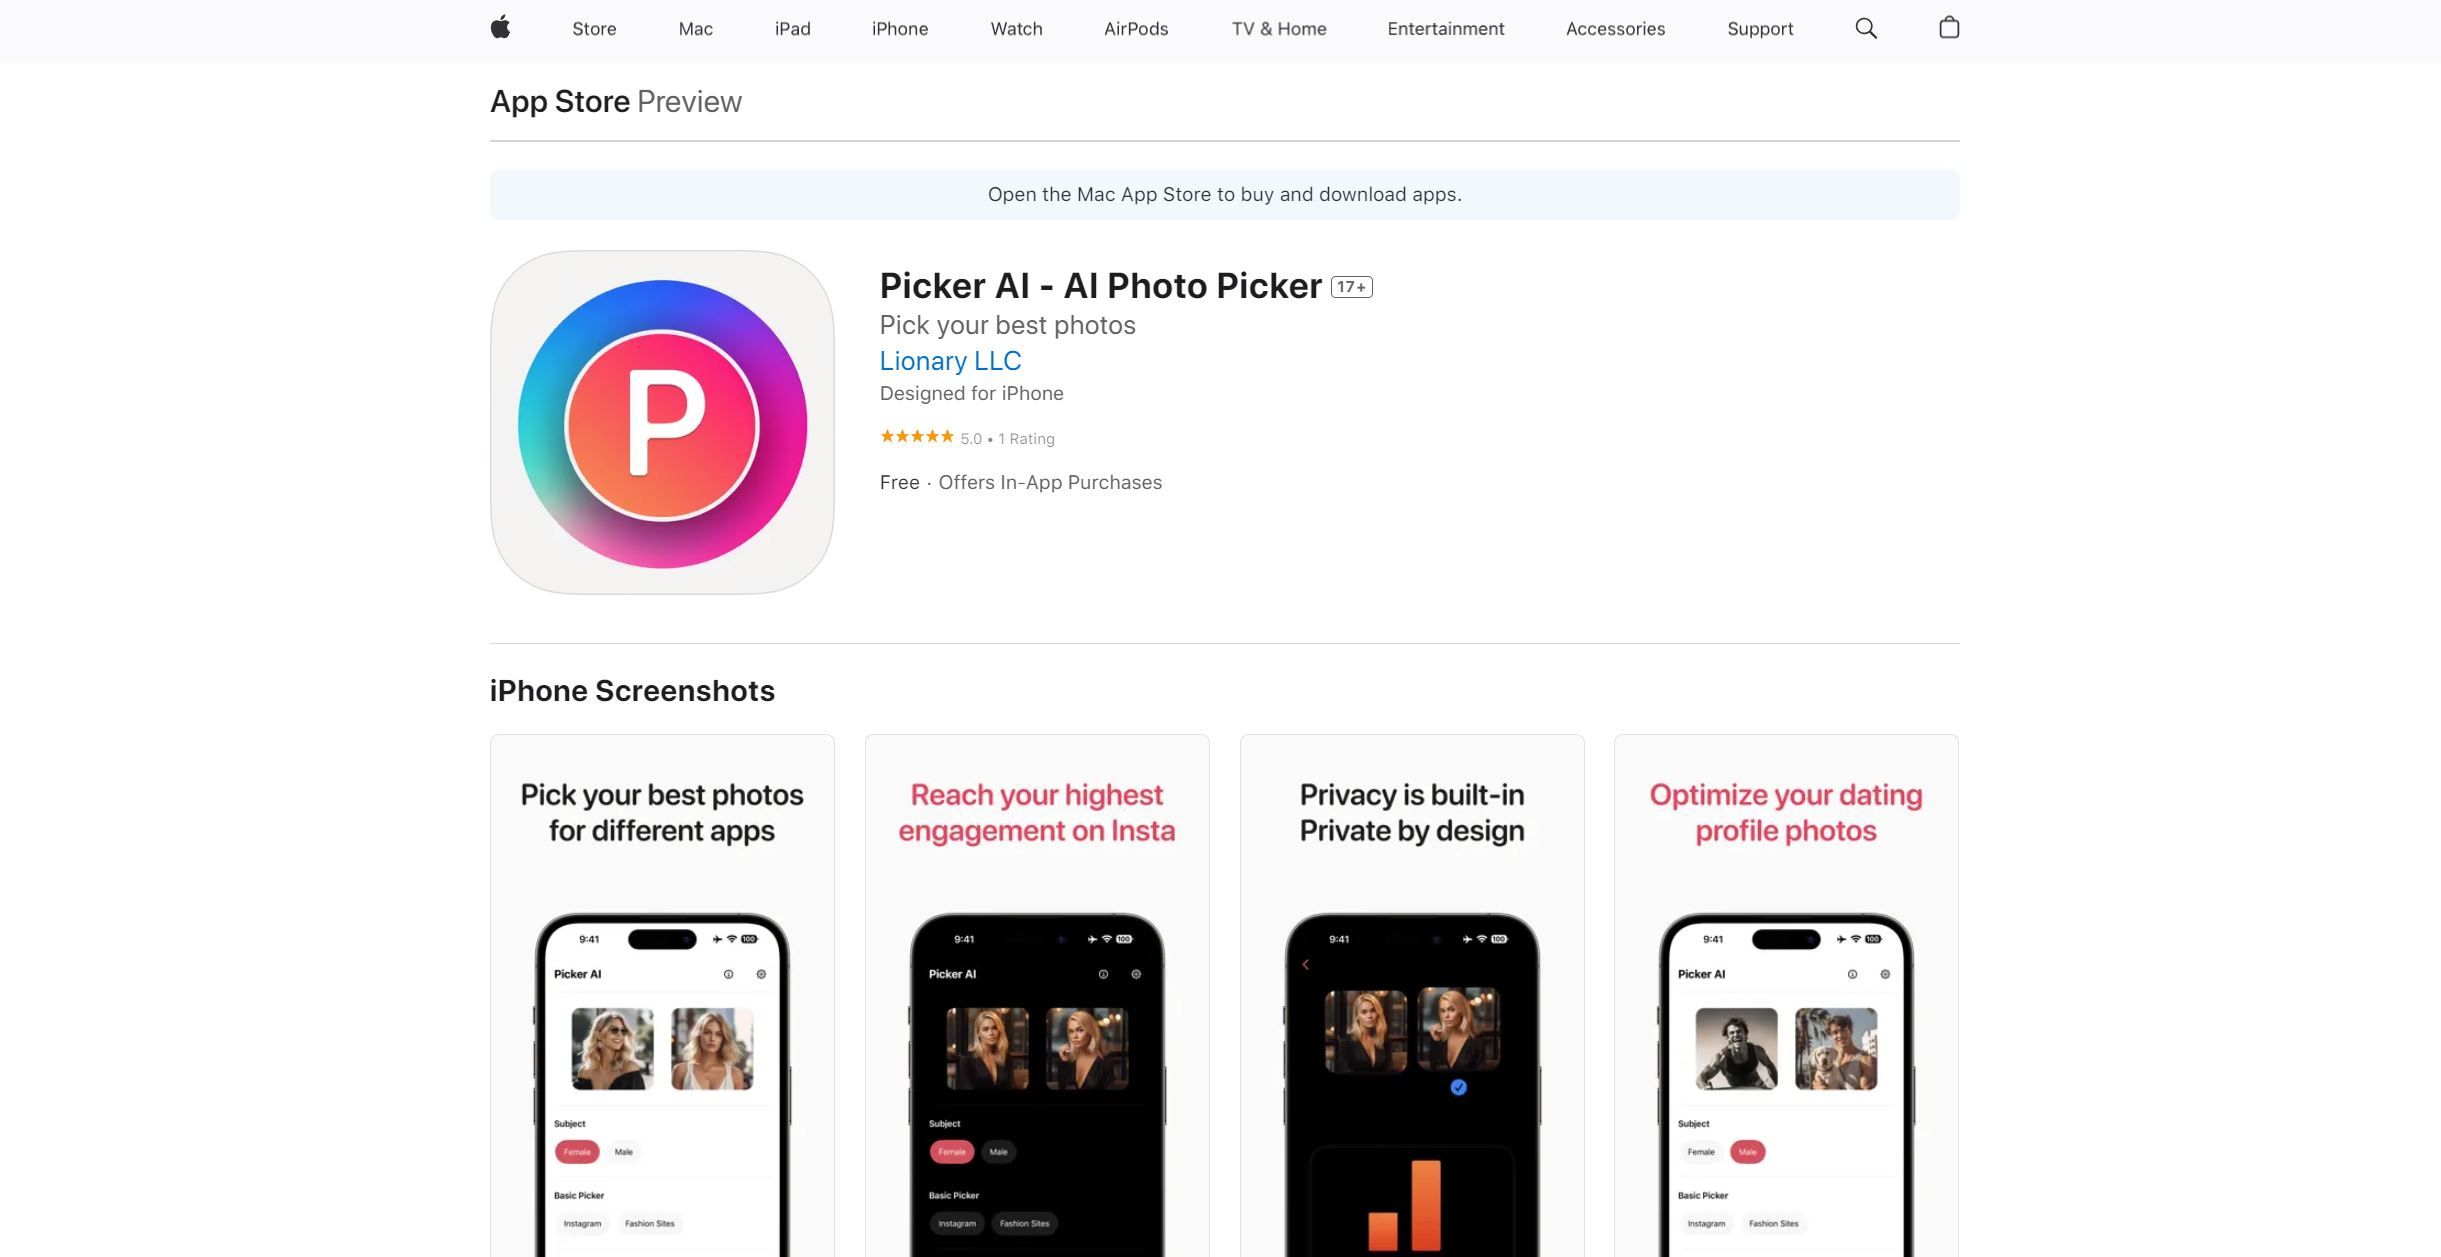 Picker AI - AI Photo Picker